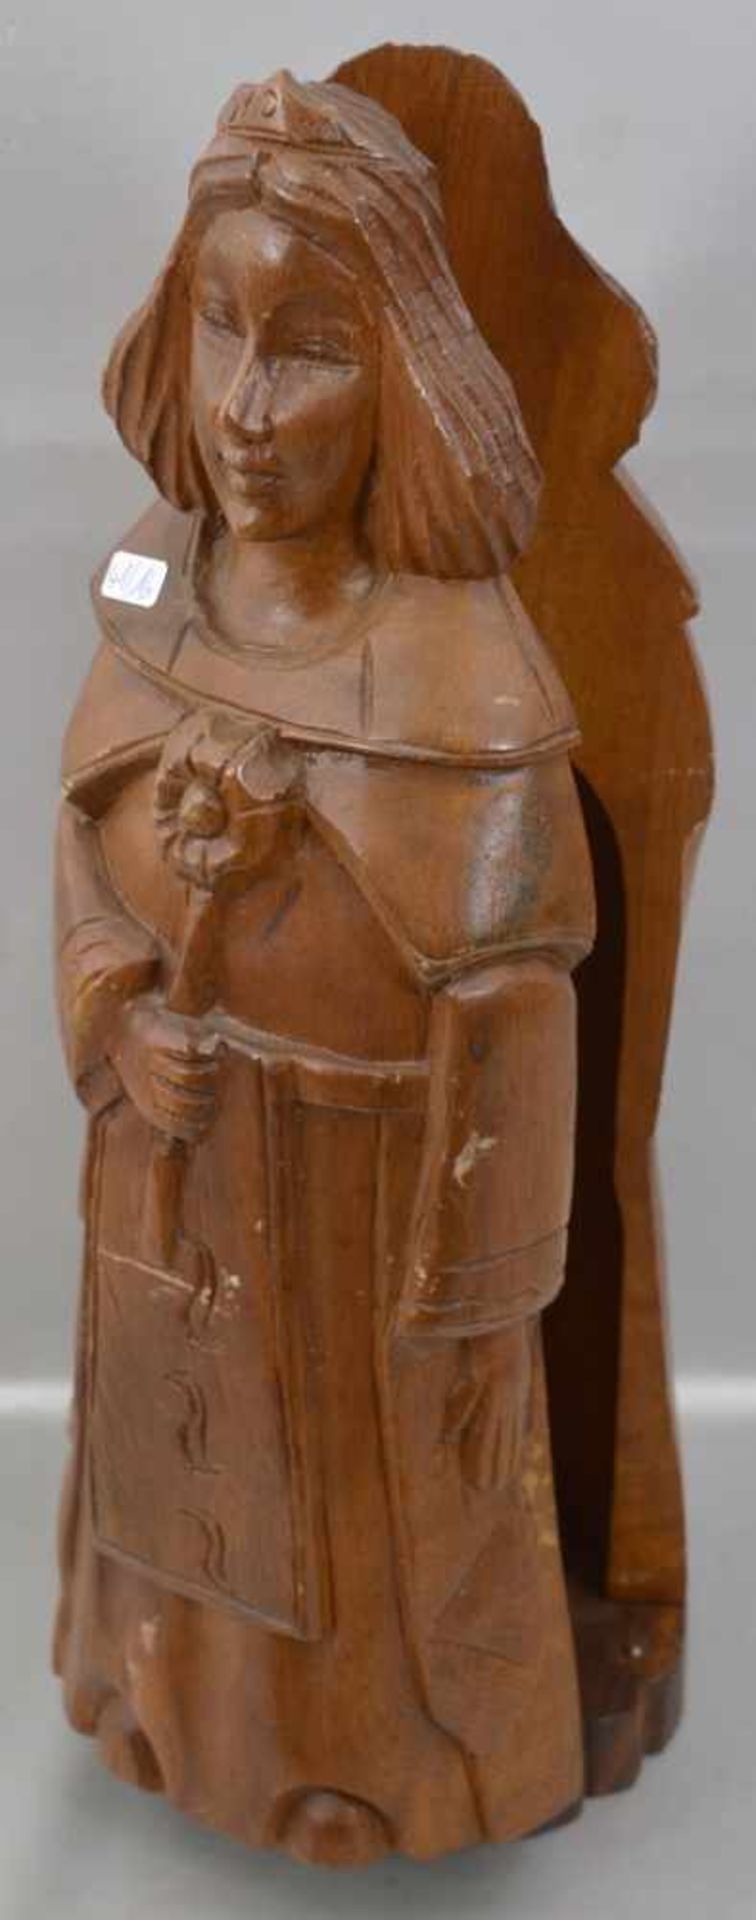 Flaschenschatulle figürliche Darstellung einer Frau mit Blüte, Holz, geschnitzt, H 42 cm